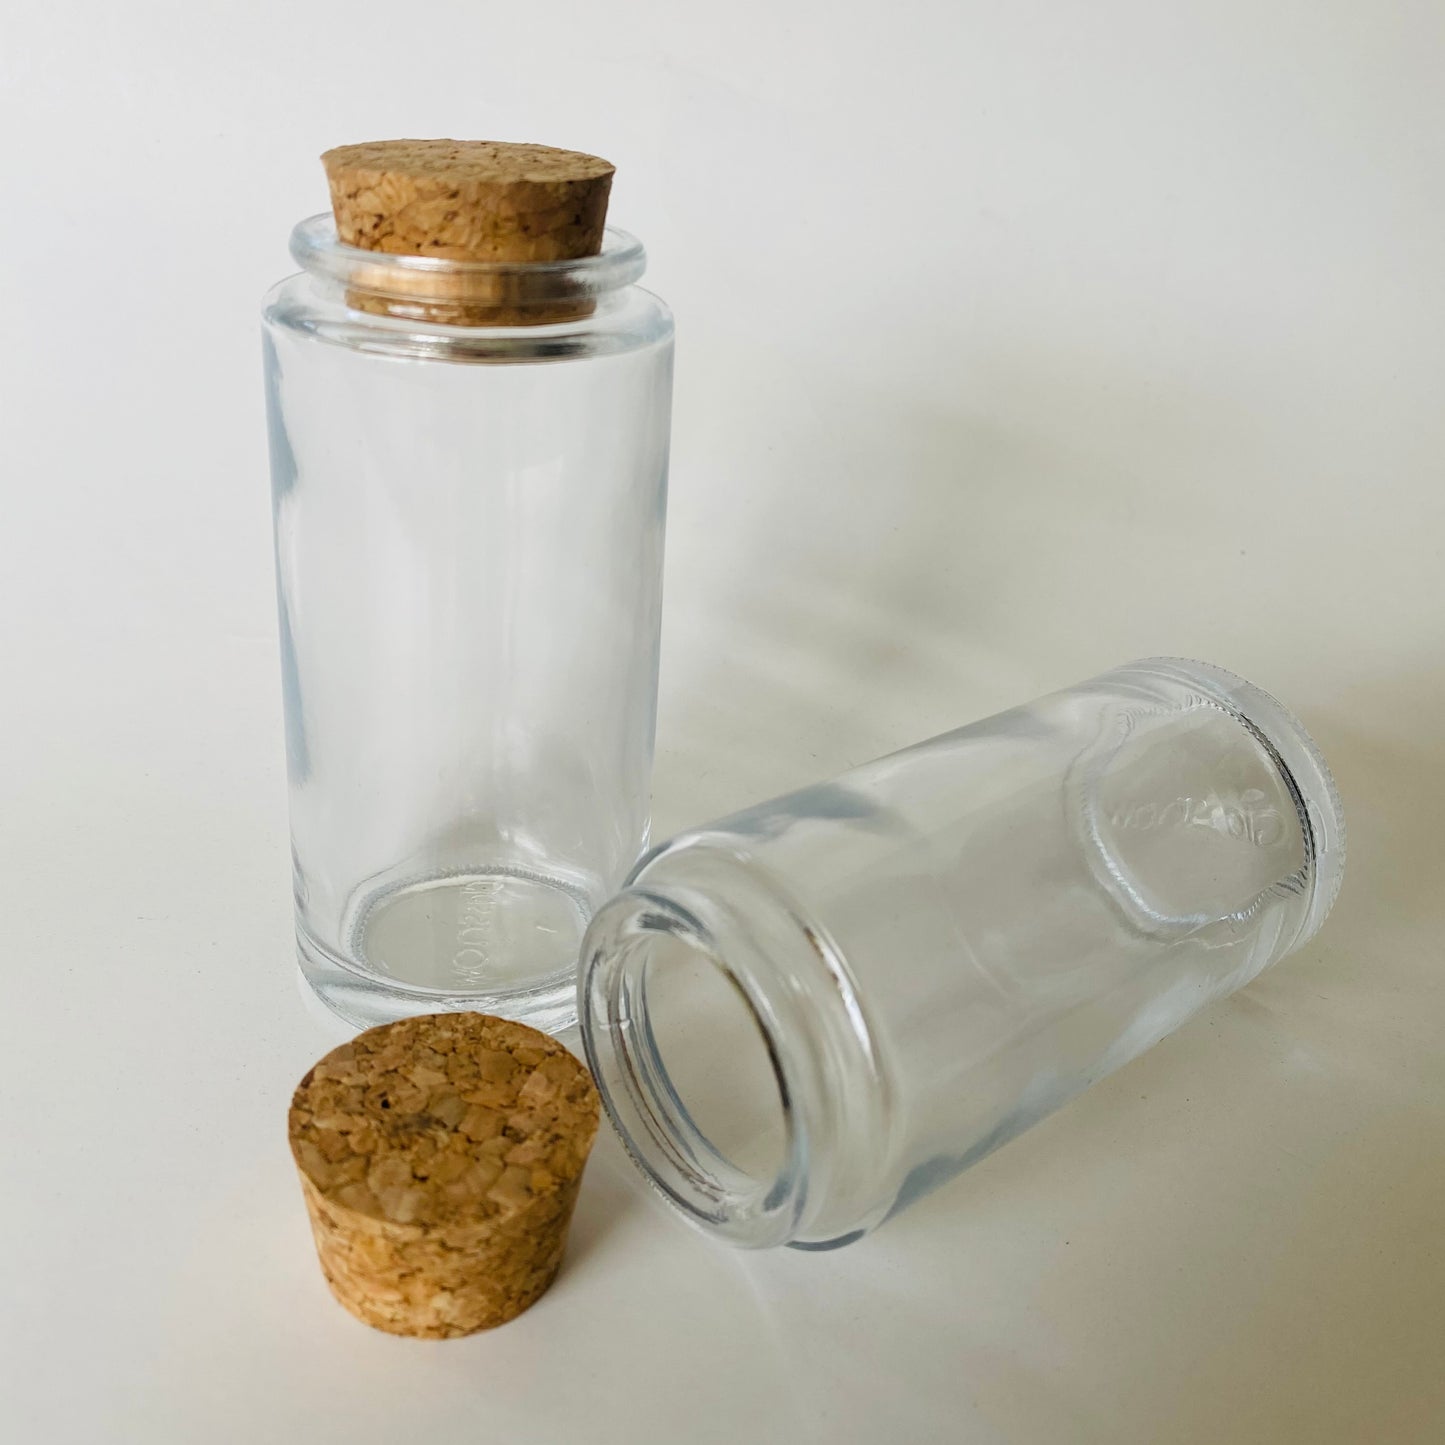 Round Spice Jar with Cork, 3.4 oz. – Wild Island Trading Co